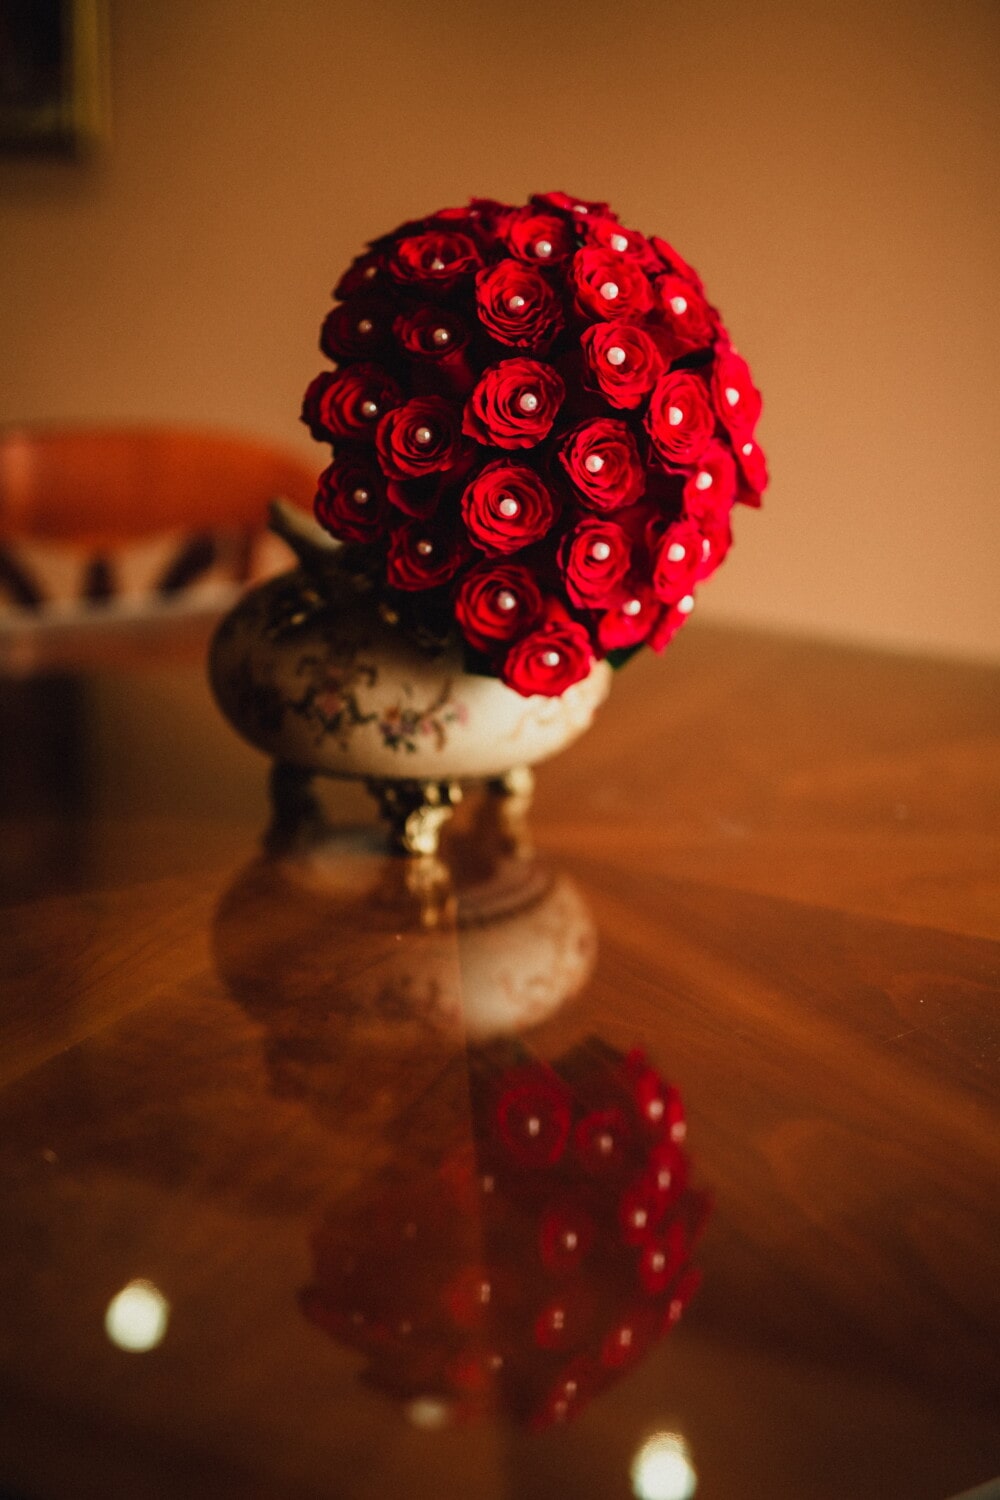 zátiší, zblízka, červená, růže, kytice, váza, výzdoba interiéru, keramika, stůl, barva